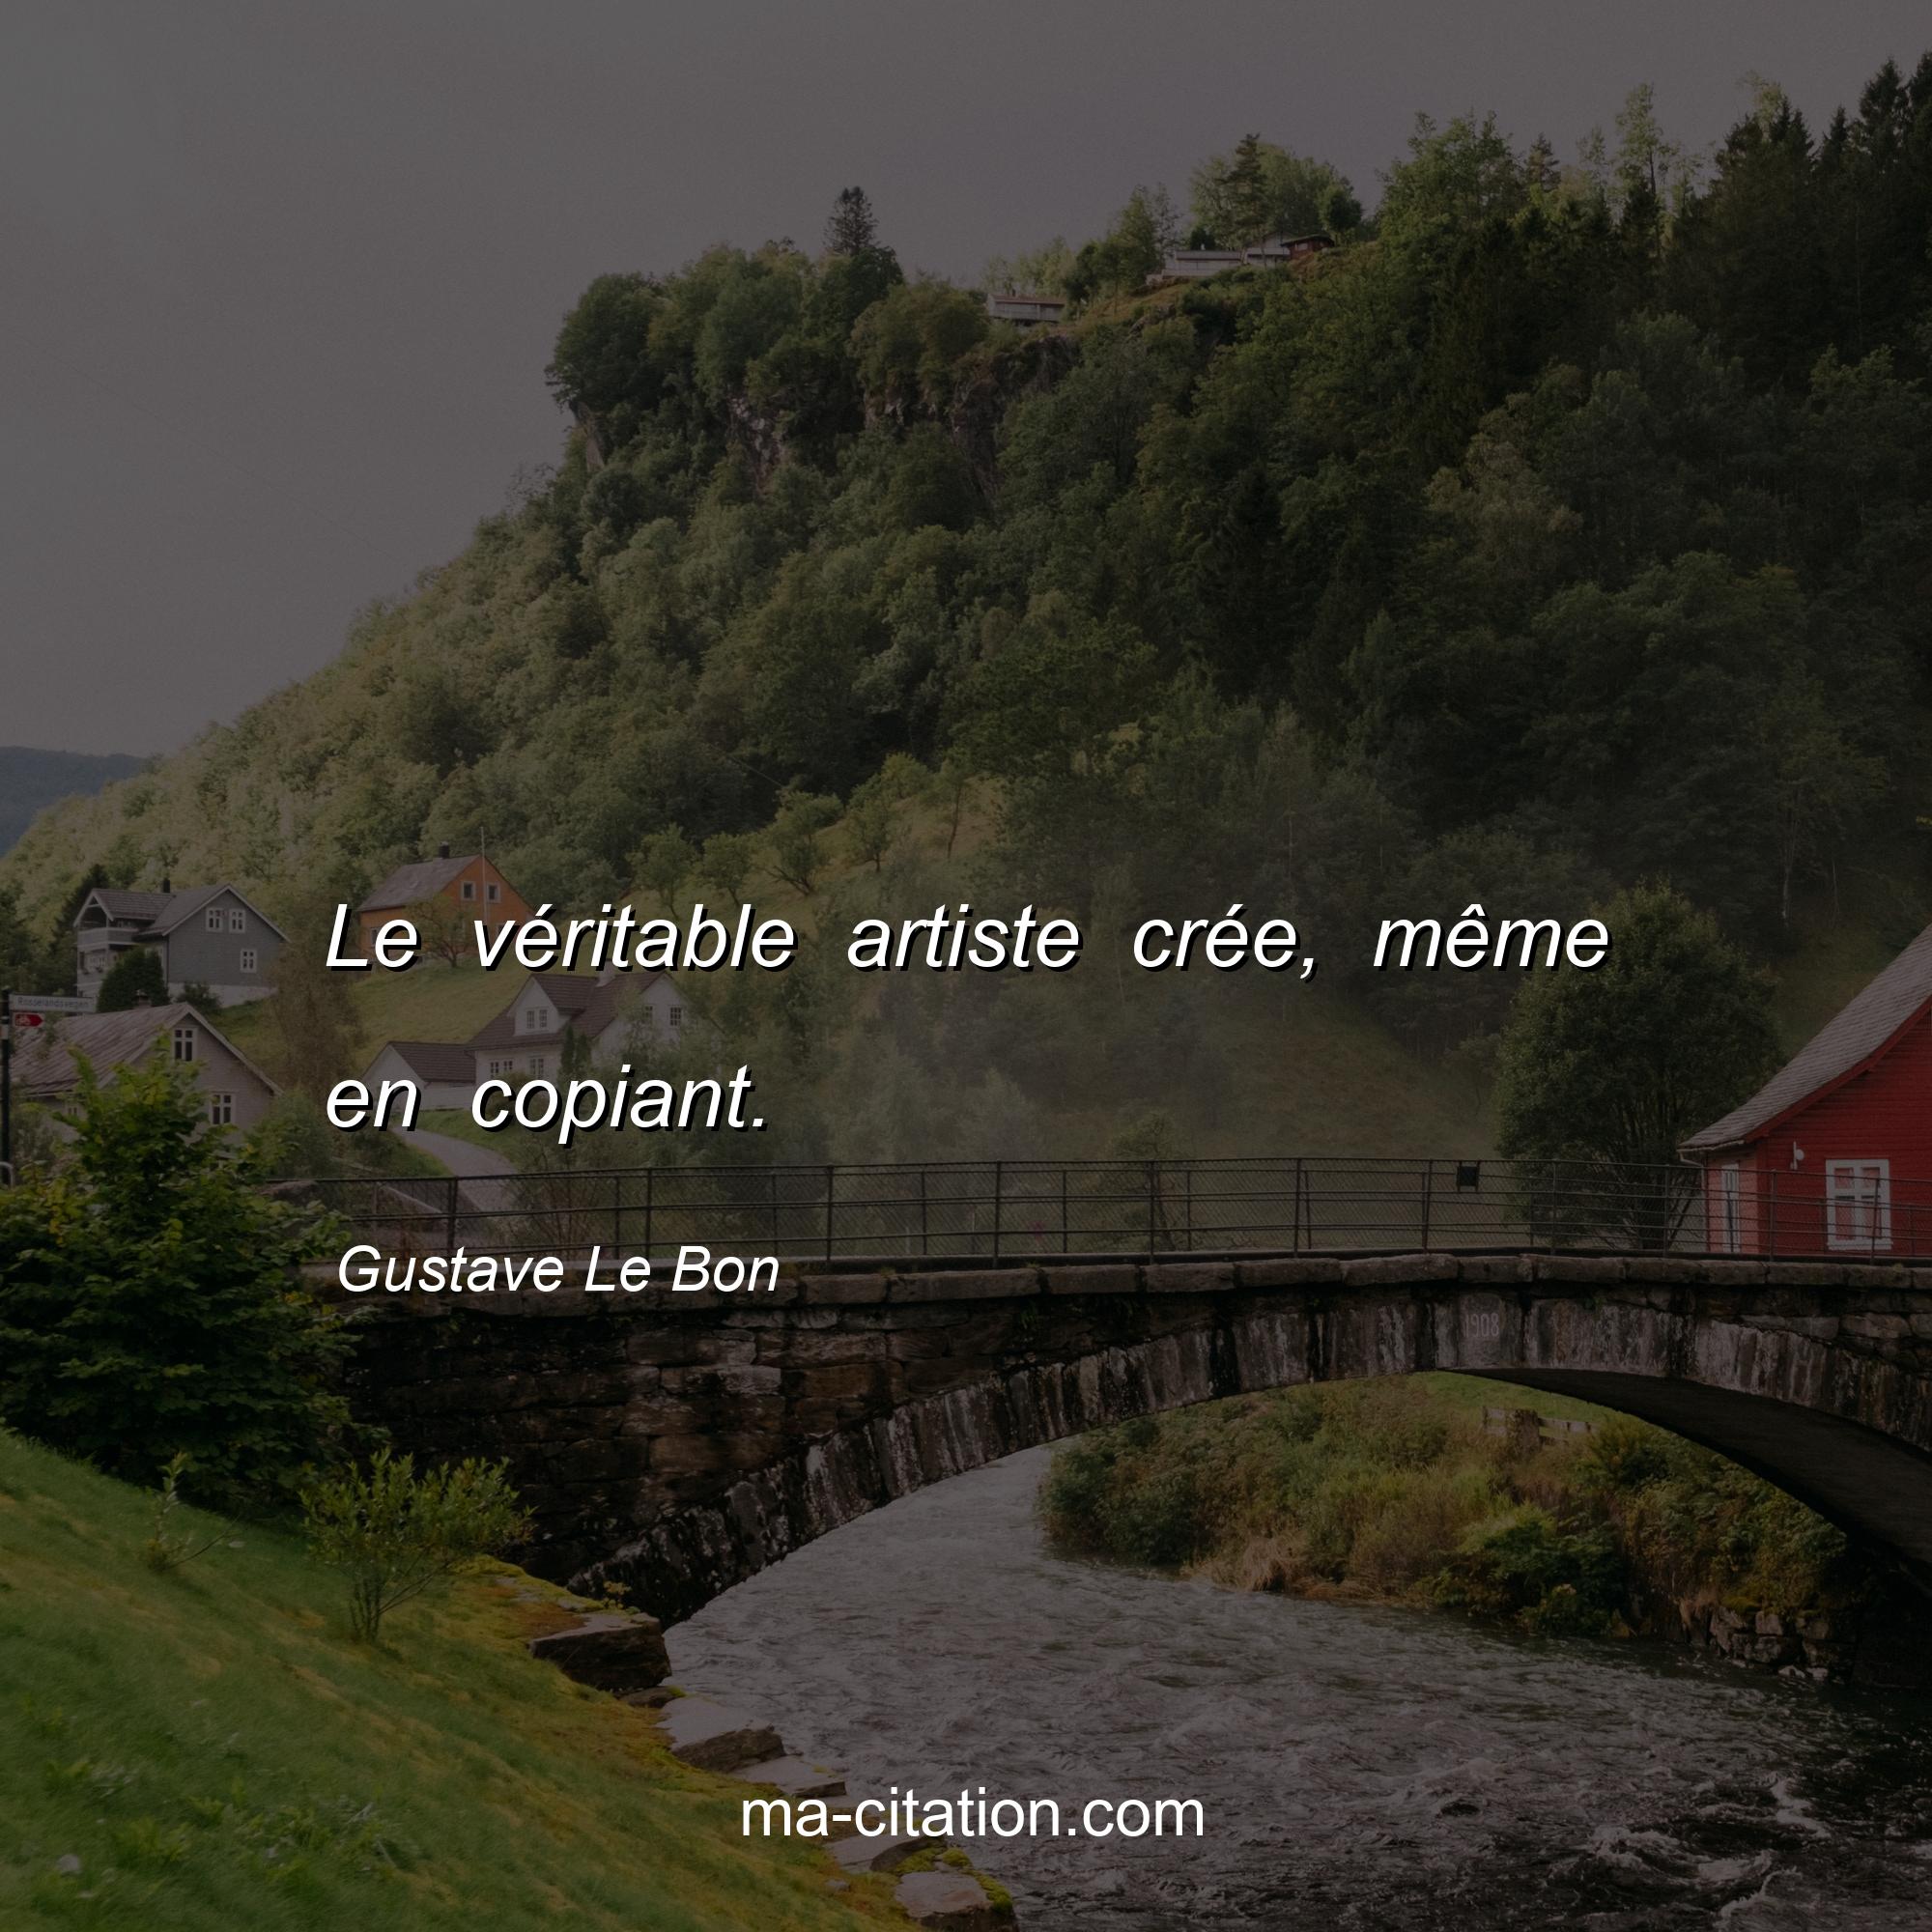 Gustave Le Bon : Le véritable artiste crée, même en copiant.